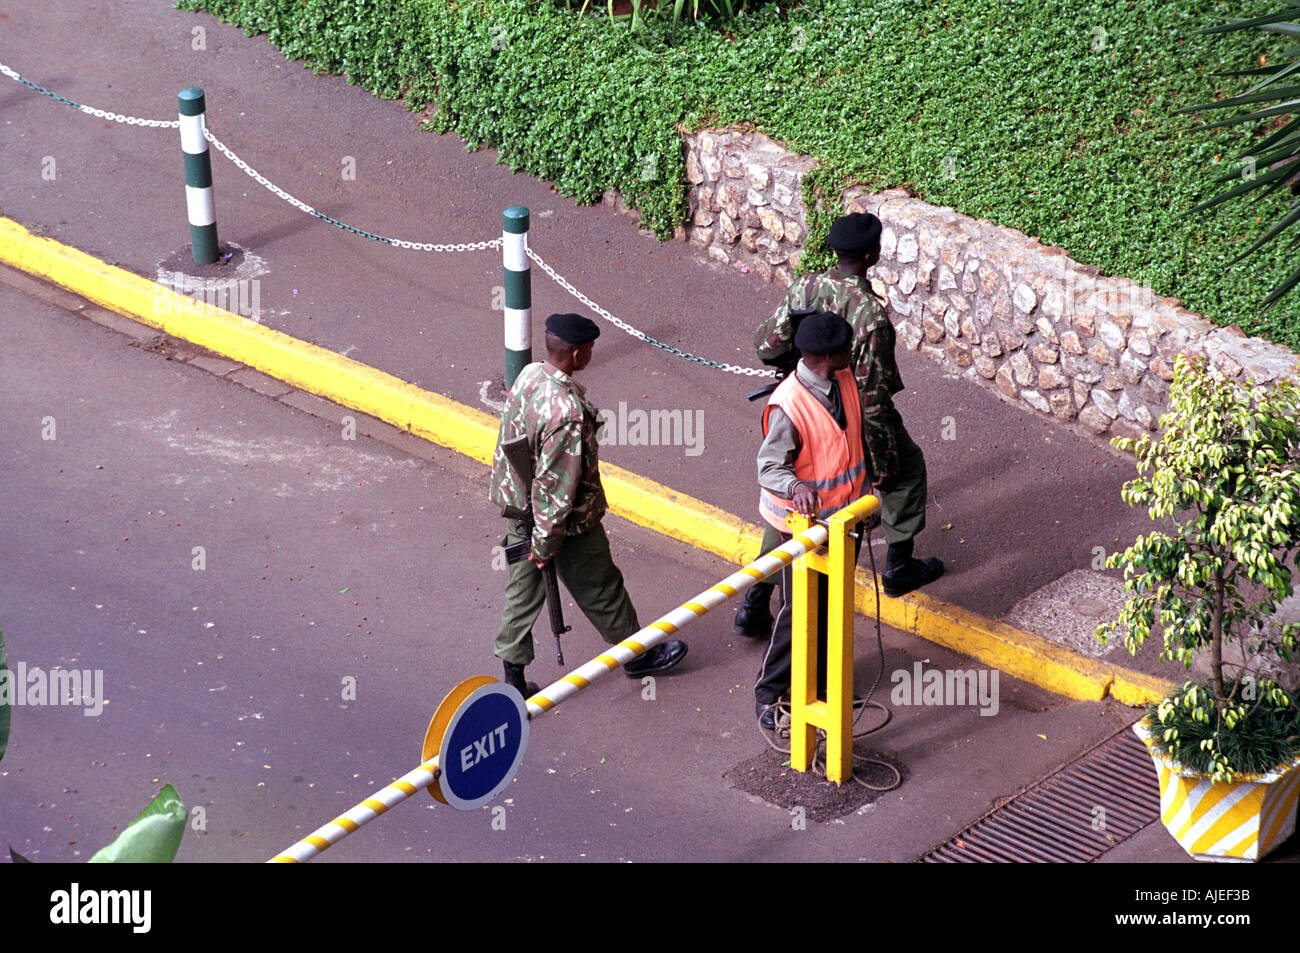 Des gardes armés à l'hôtel gates au Kenya Afrique de l'Est Banque D'Images